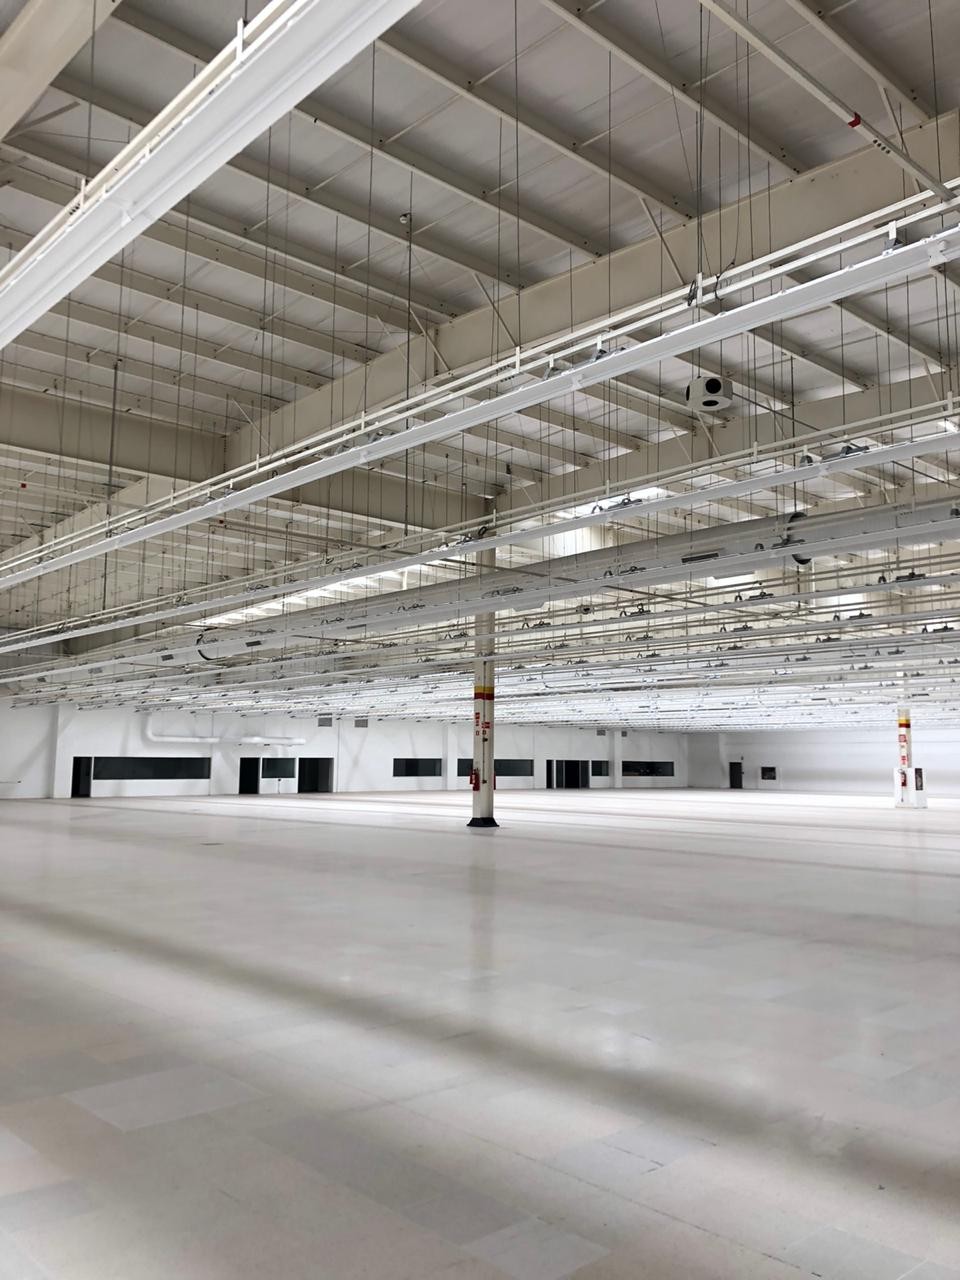 Shopping vai montar 148 estandes em uma área com mais de 12 mil m² onde funcionava o hipermercado Big, no Shopping Cidade – Foto: Divulgação